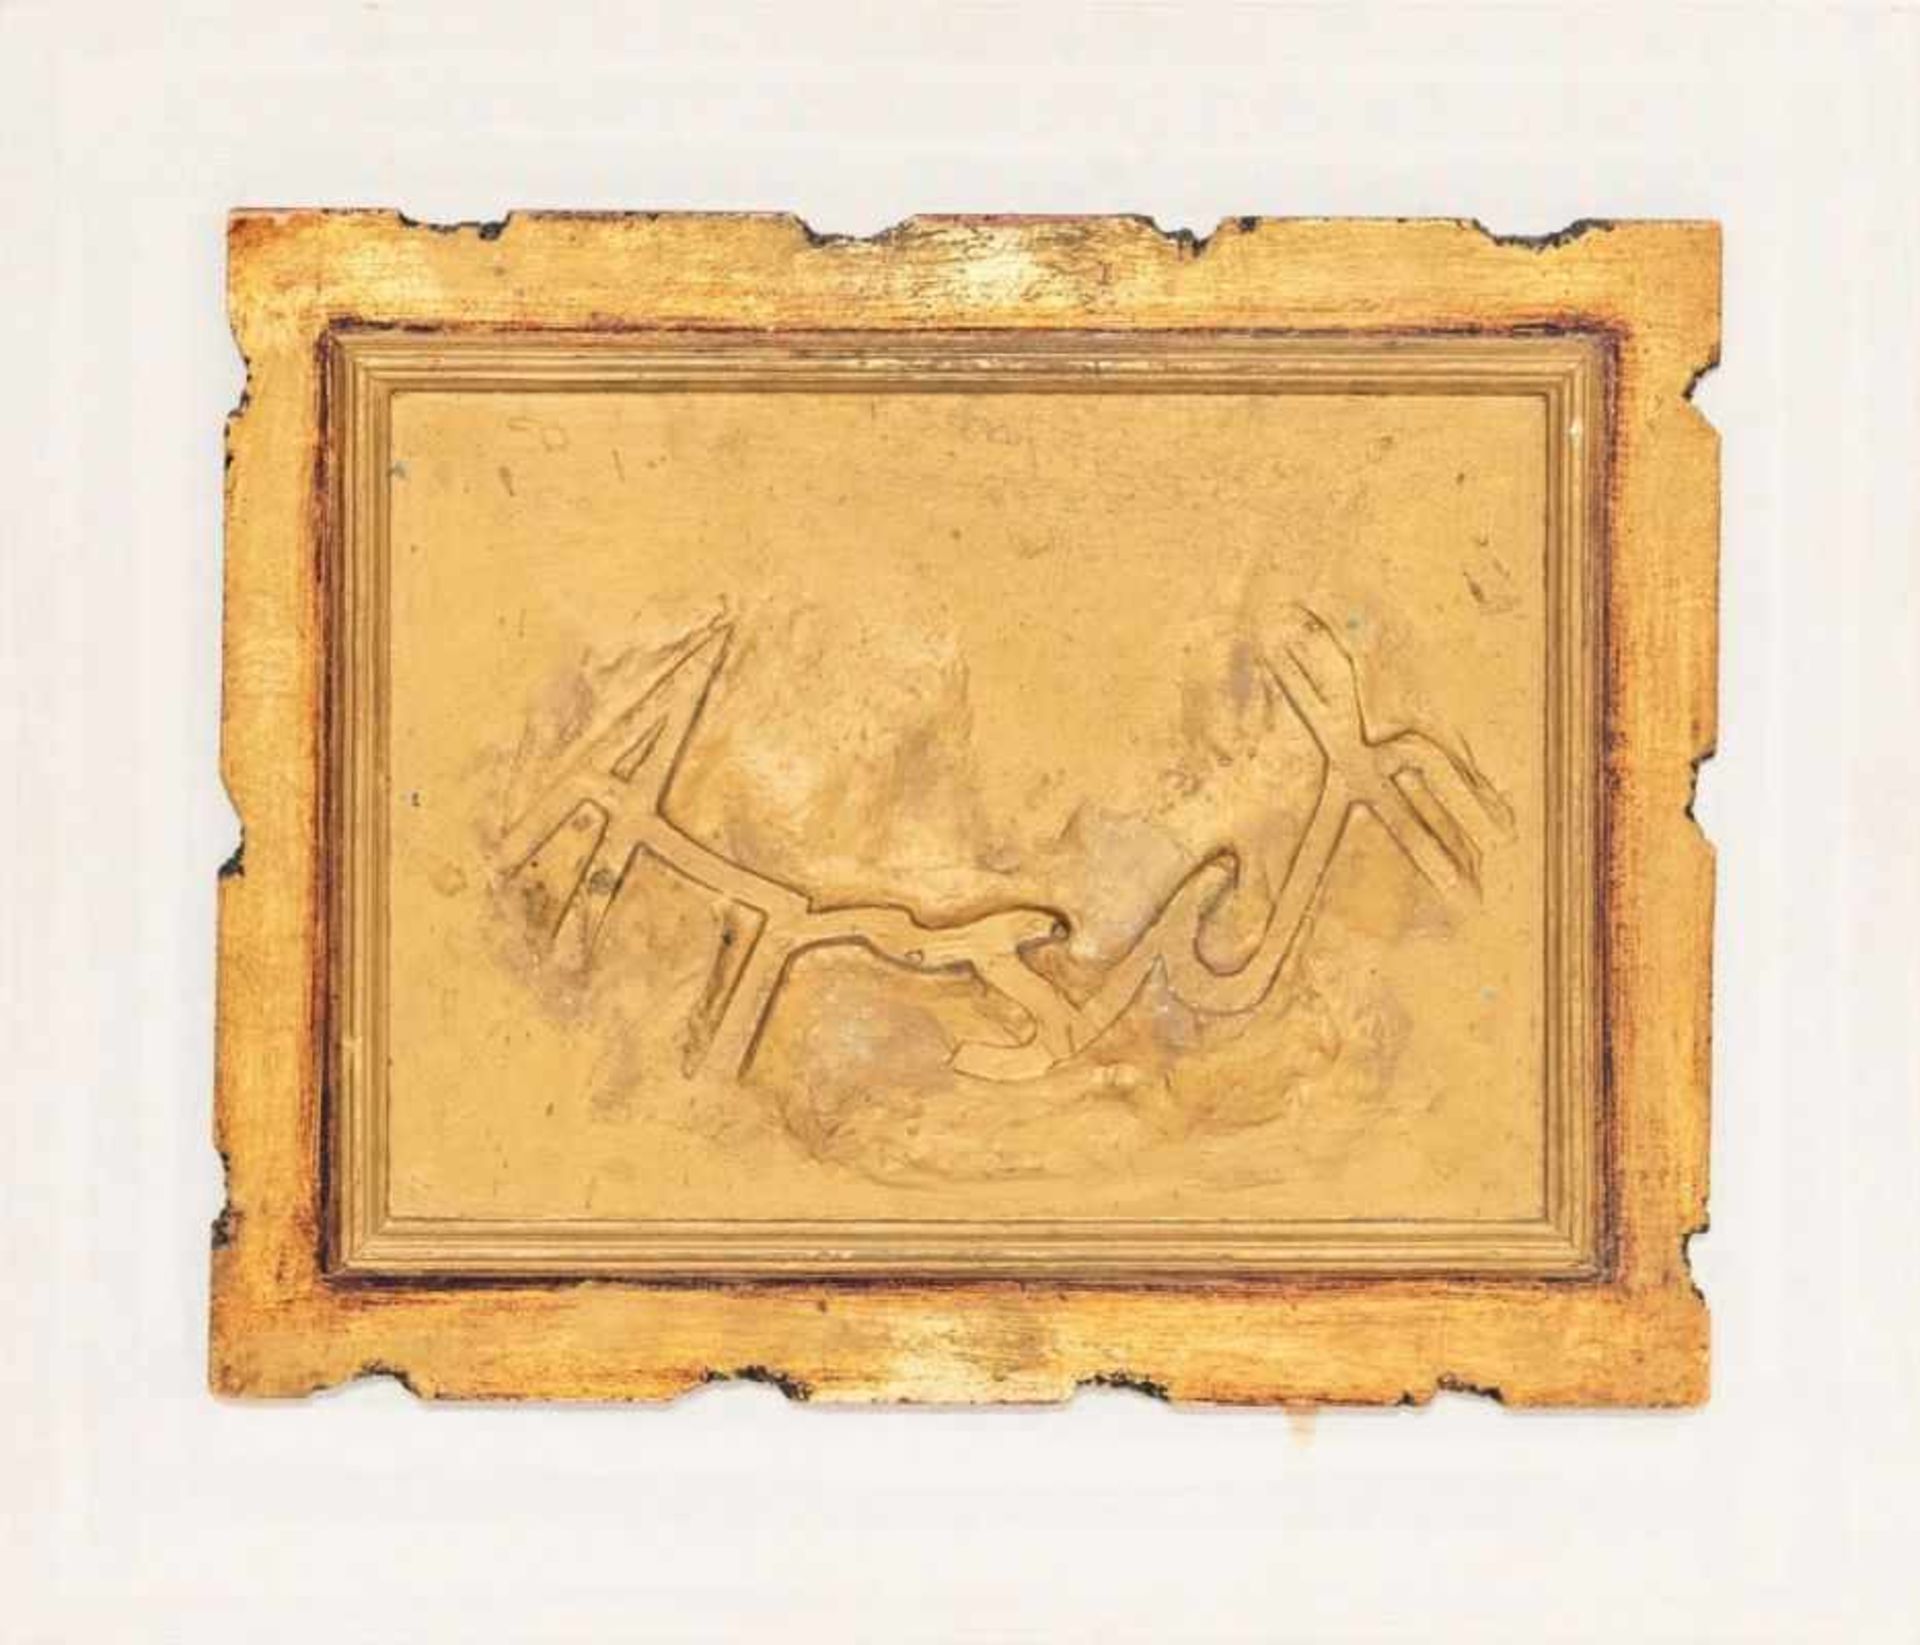 FRANZ WEST (1947 WIEN - 2012 WIEN) ARSCH Relief 38 x 48 cm auf Holzpanel 53 x 62 cm Signatur vorne